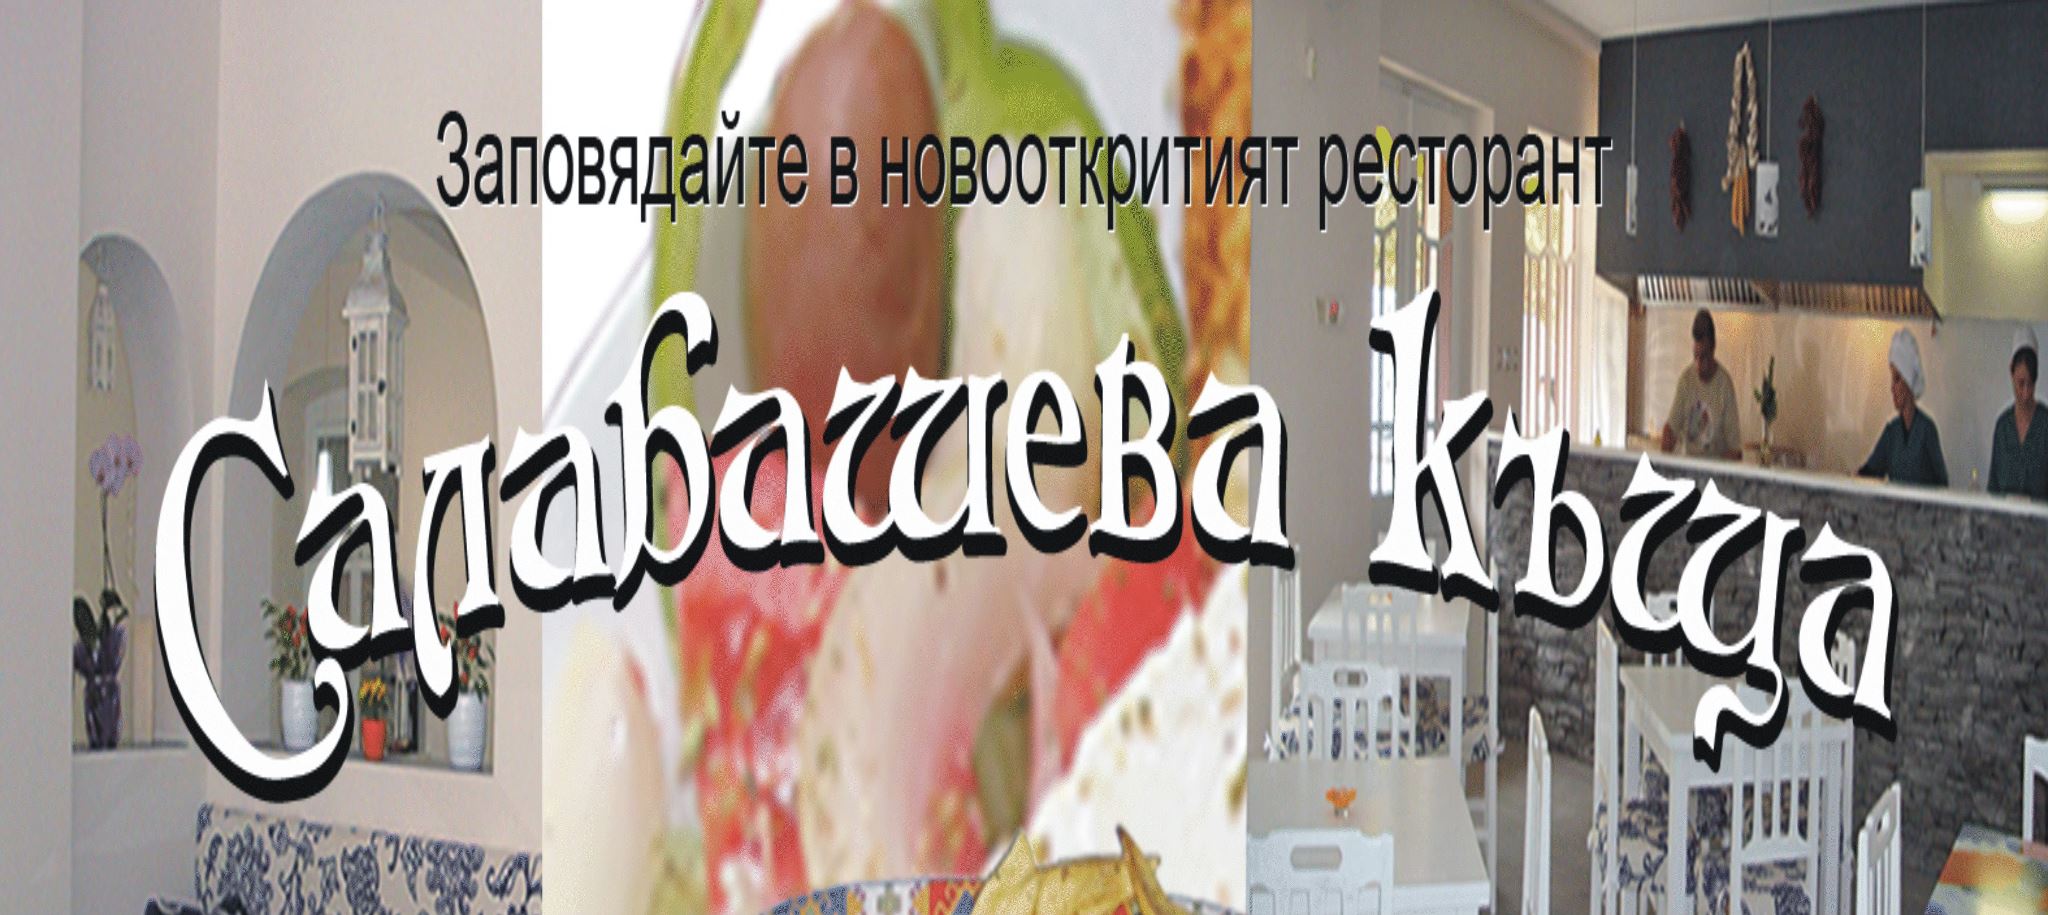 Image for "Салабашева къща" | Ресторант, Стара Загора